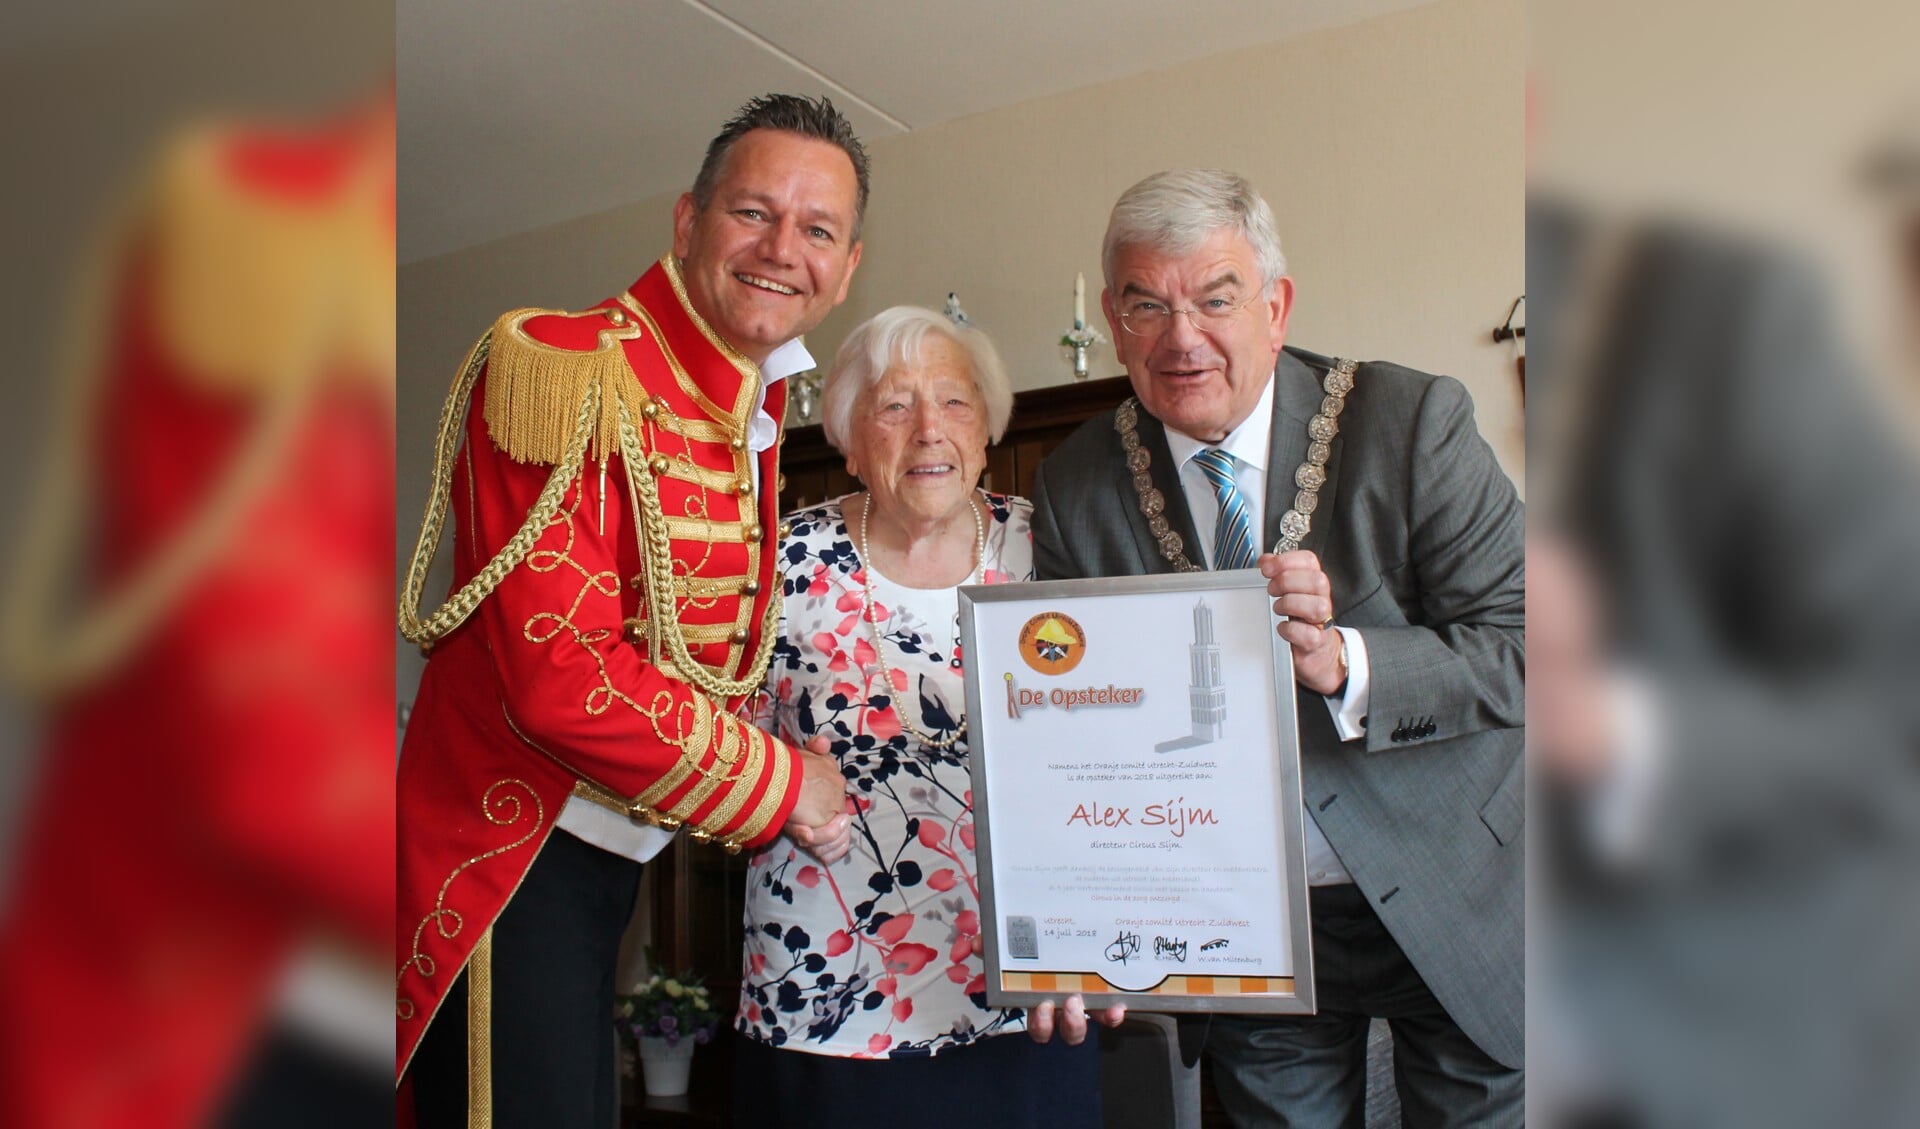 Als erkenning voor zijn werk ontving Alex Sijm uit handen van Utrechts burgemeester Jan van Zanen en de 102-jarige mevrouw Bennekom, De Opsteker van de Stad Utrecht. (Foto: aangeleverd)